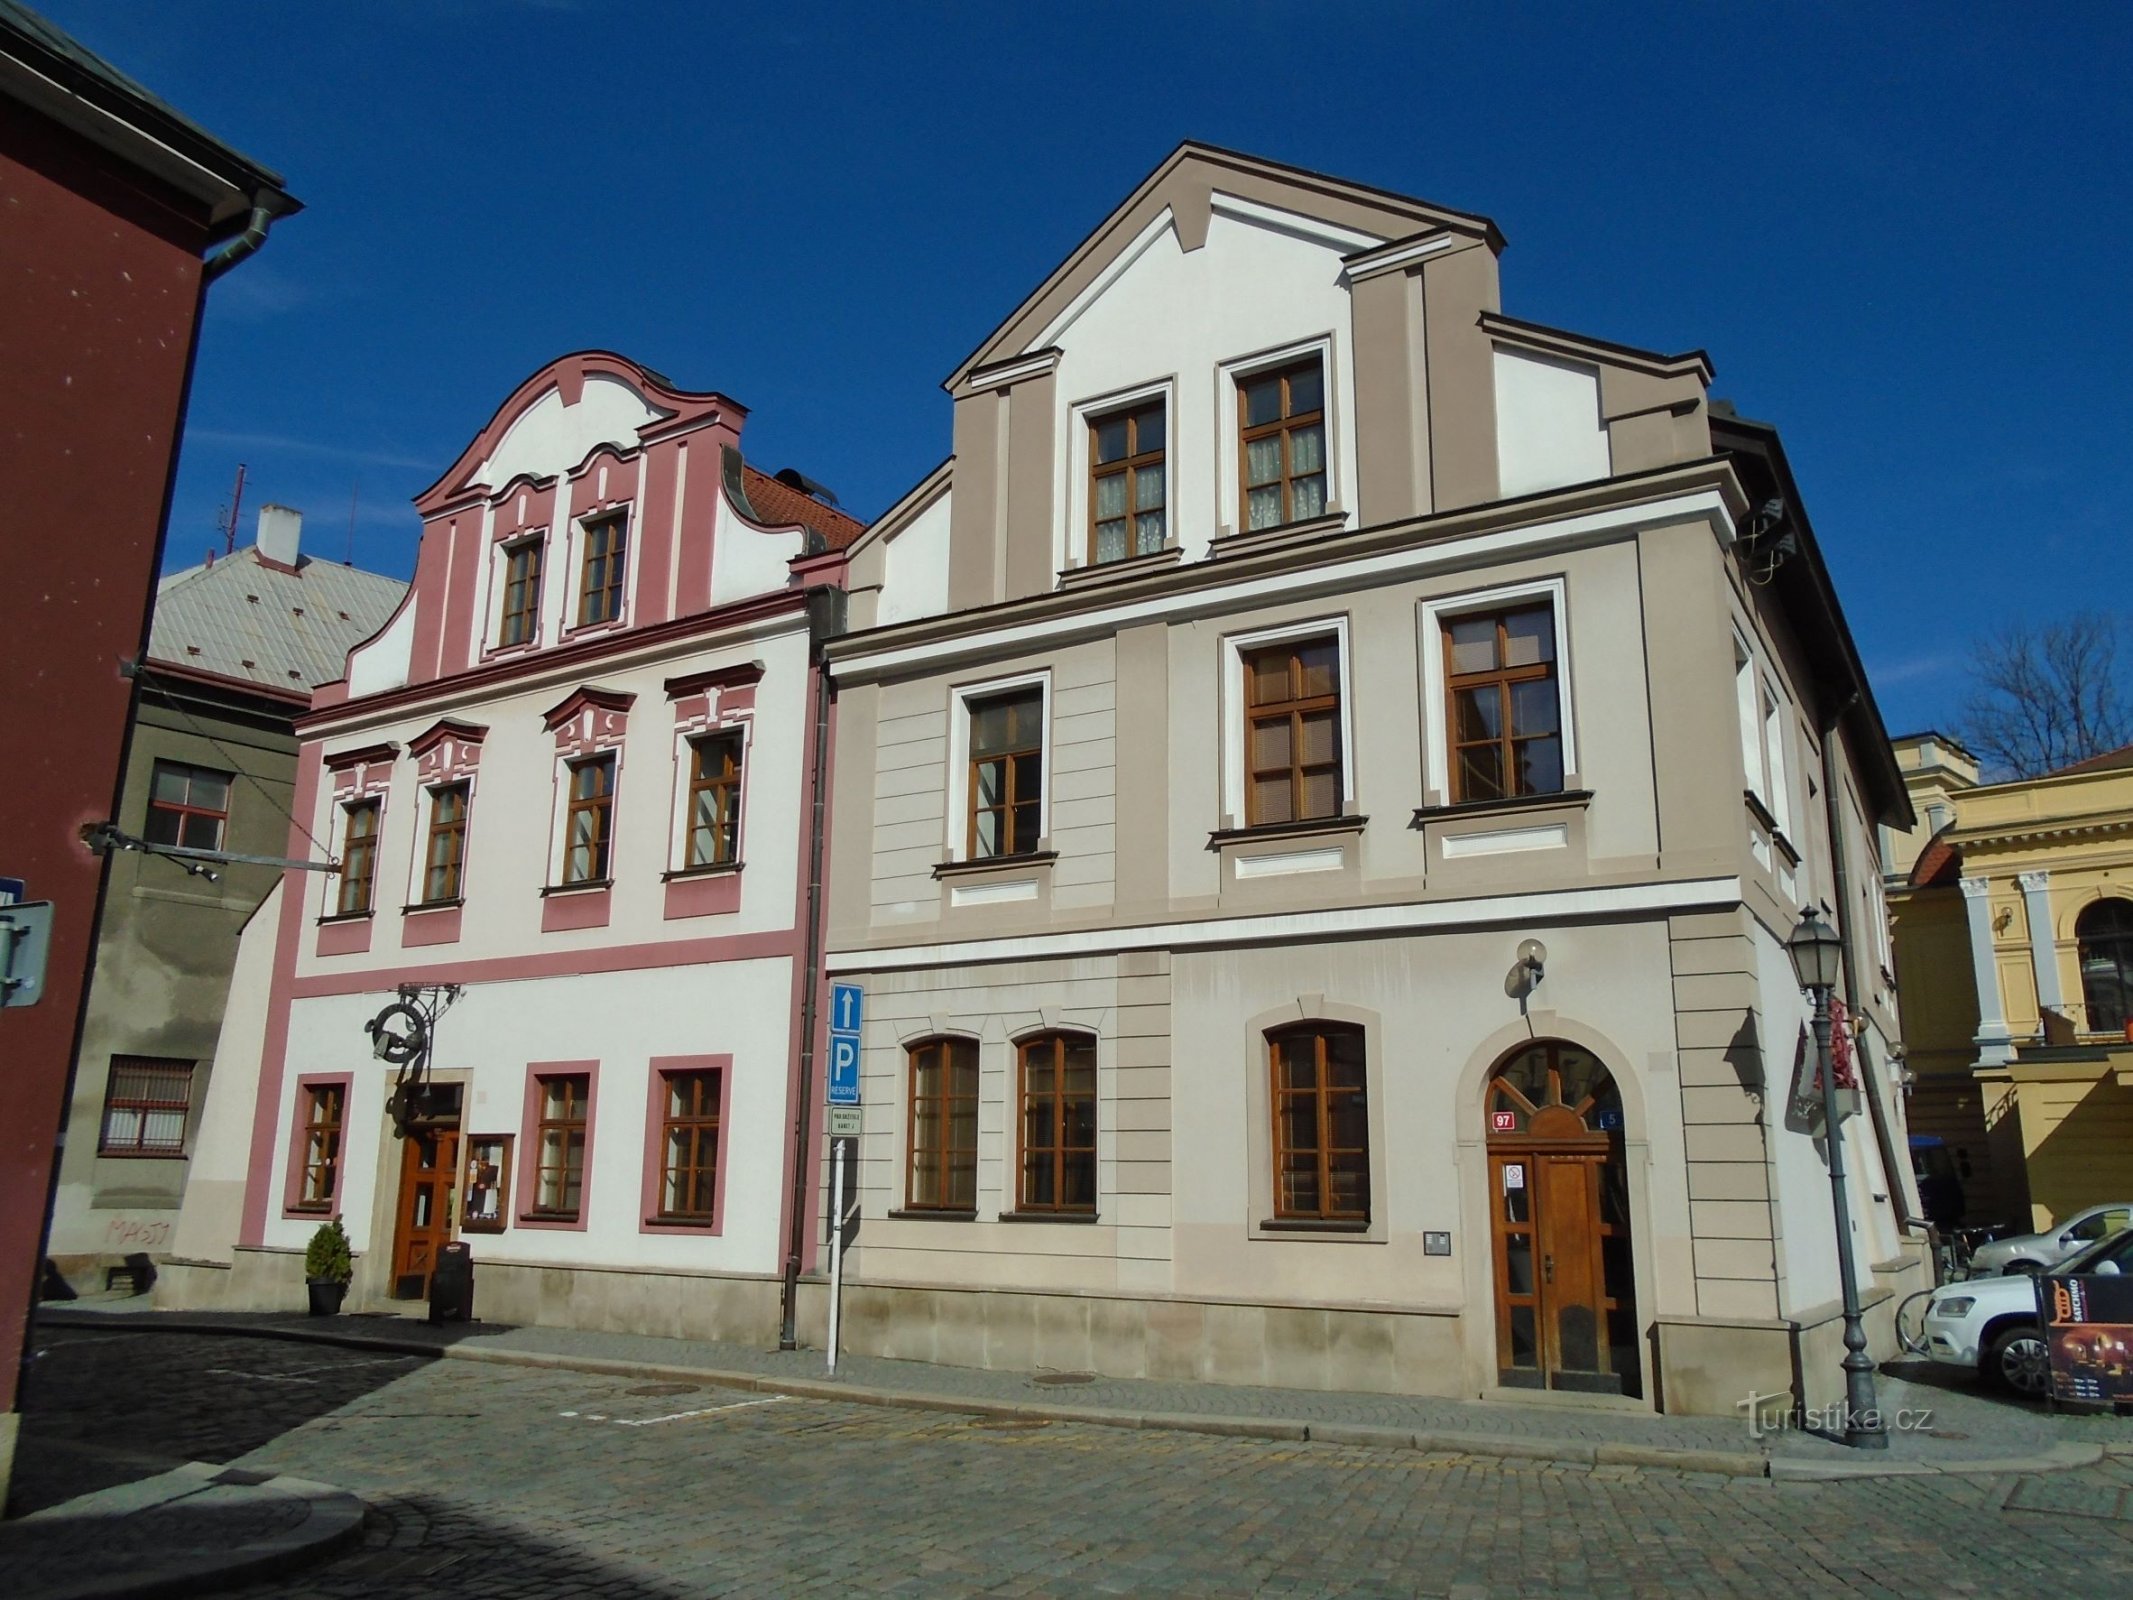 Dolga št. 96-97 (Hradec Králové, 5.4.2018. avgust XNUMX)